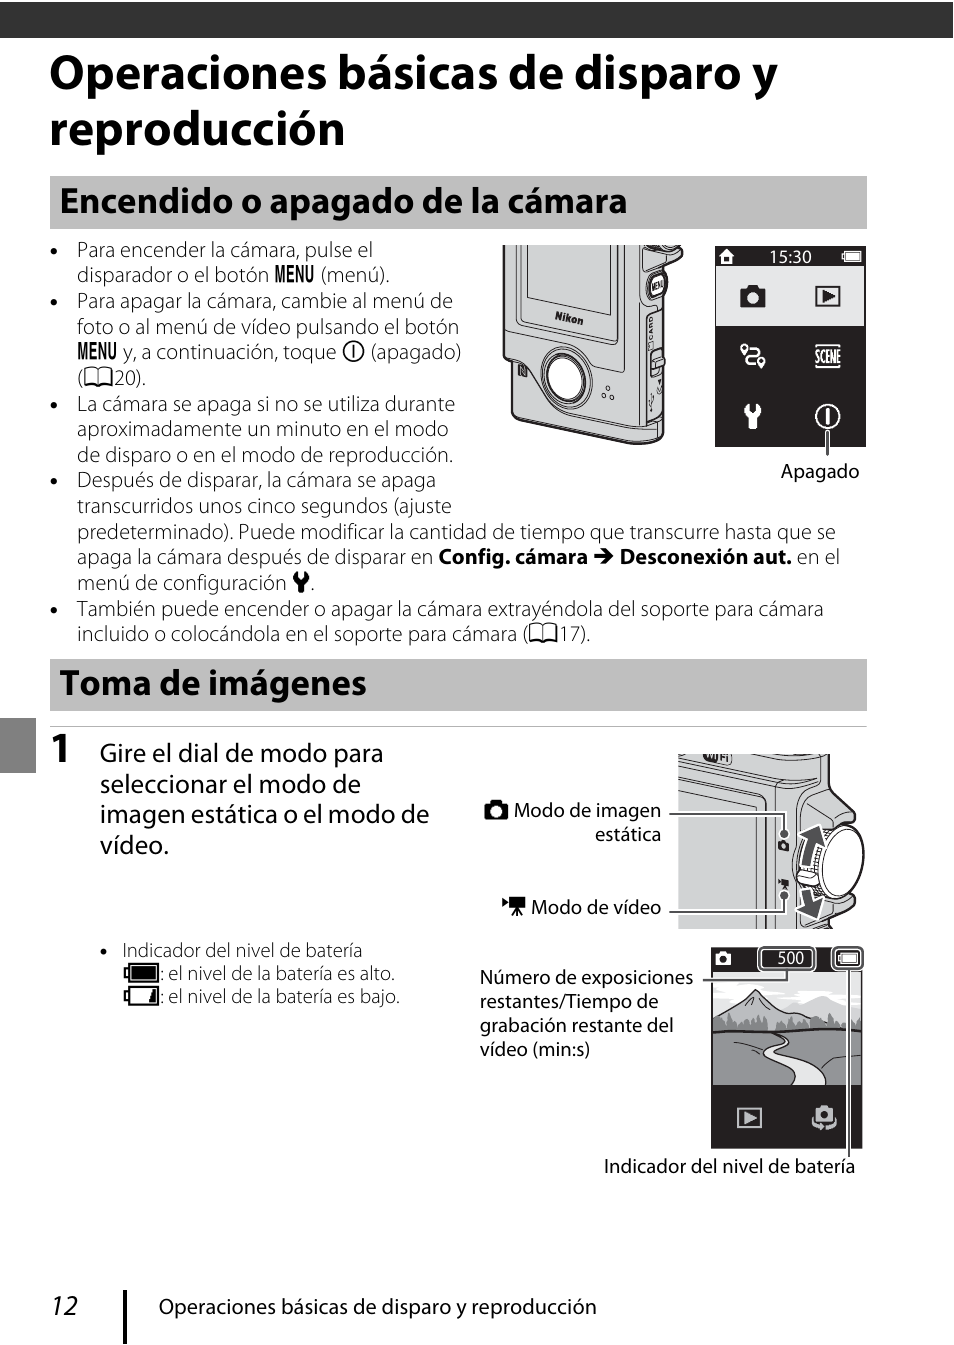 Operaciones básicas de disparo y reproducción, Encendido o apagado de la cámara toma de imágenes | Nikon KeyMission 80 Manual del usuario | Página 22 / 48